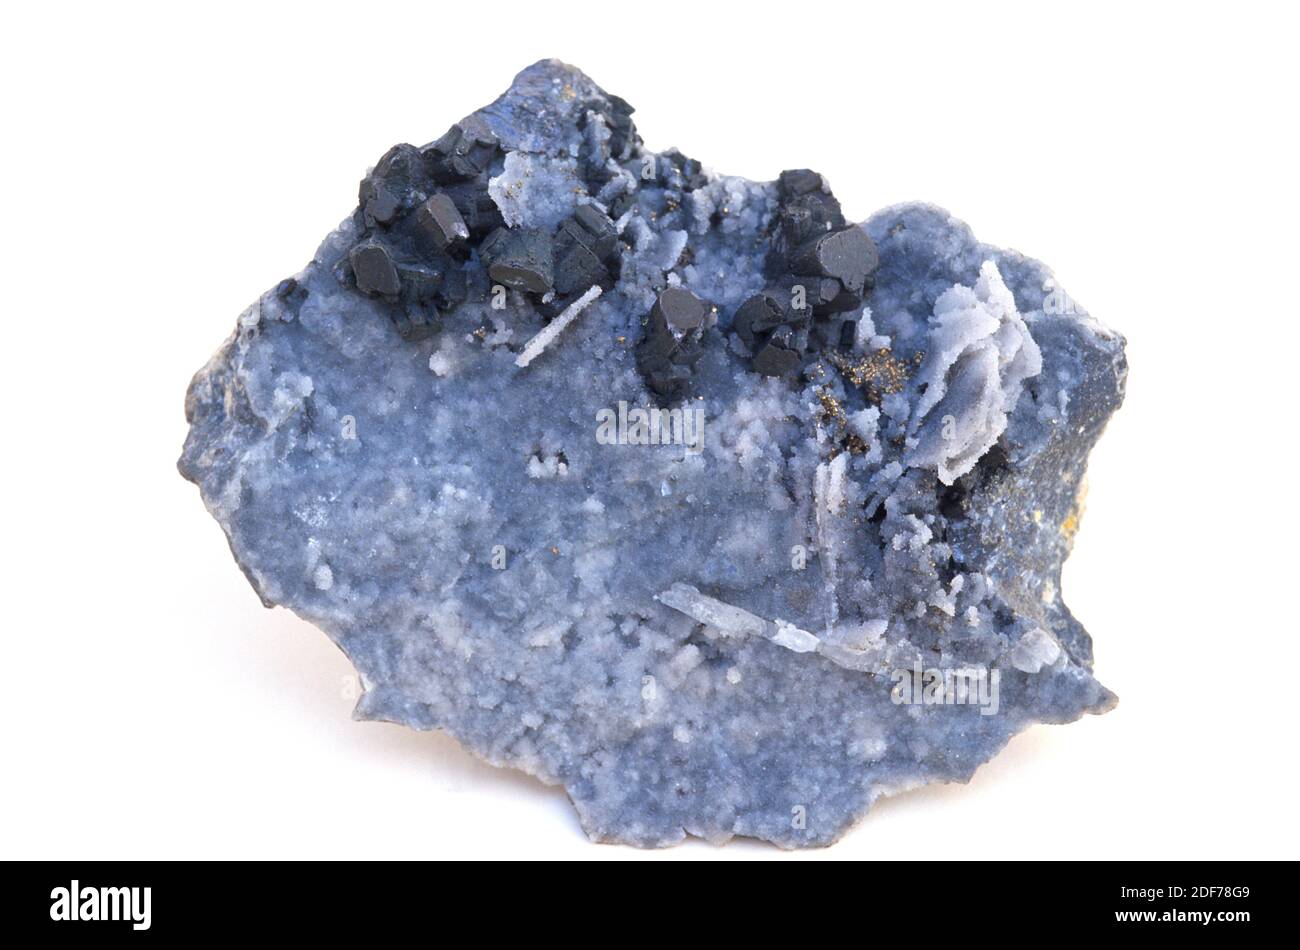 L'enargite (cristalli scuri) è un minerale di solfoalto di arsenico di rame. Campione cristallizzato circondato da barite. Foto Stock